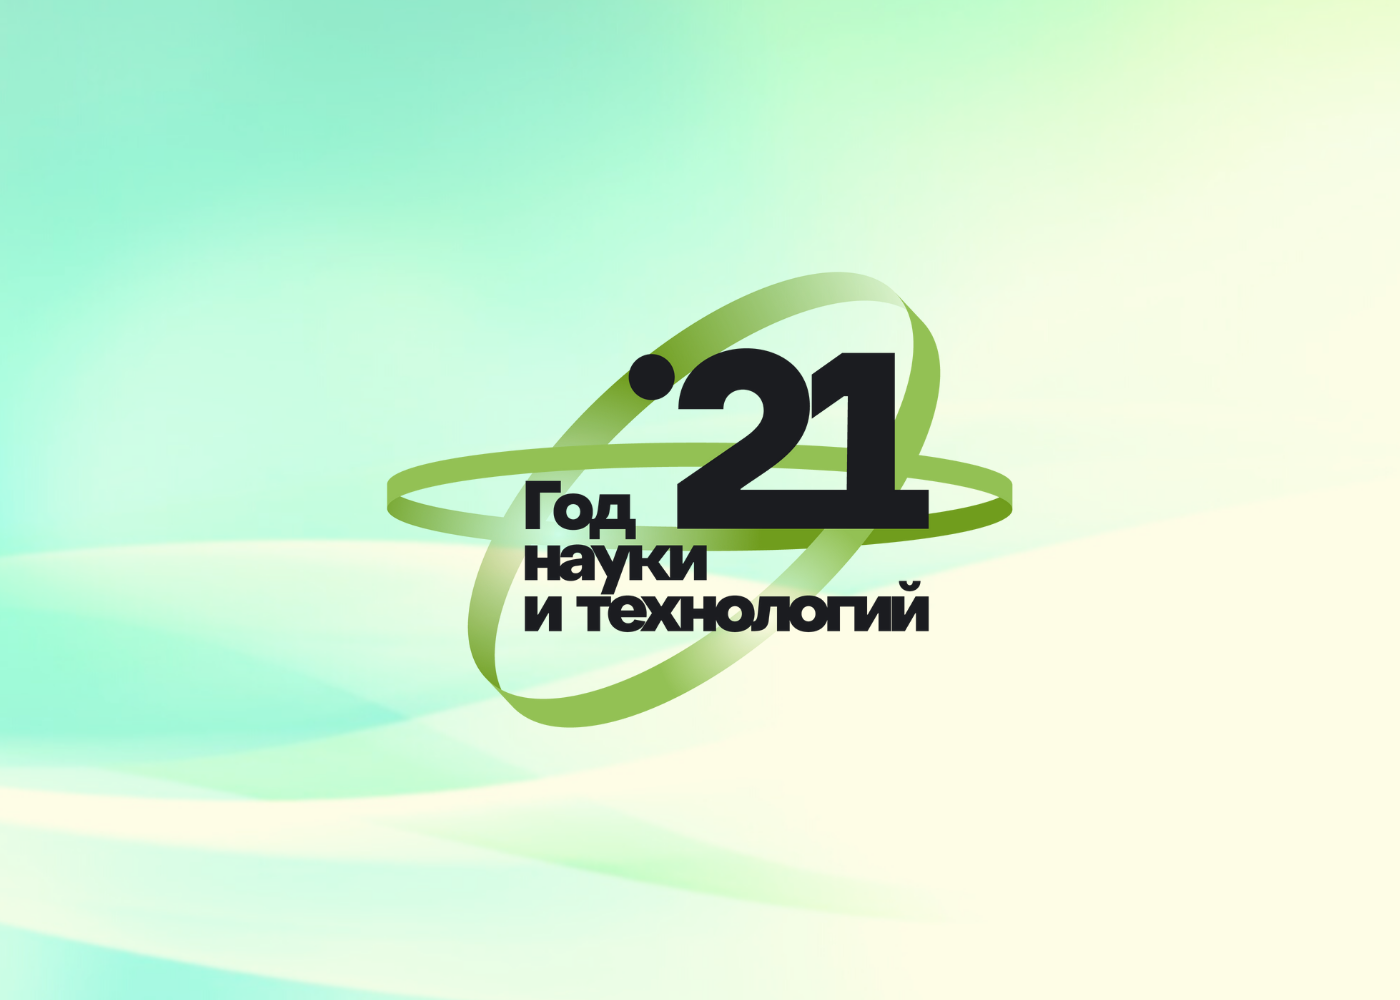 Агрополигон 2021 официально вошел в перечень мероприятий Года науки и технологий РФ